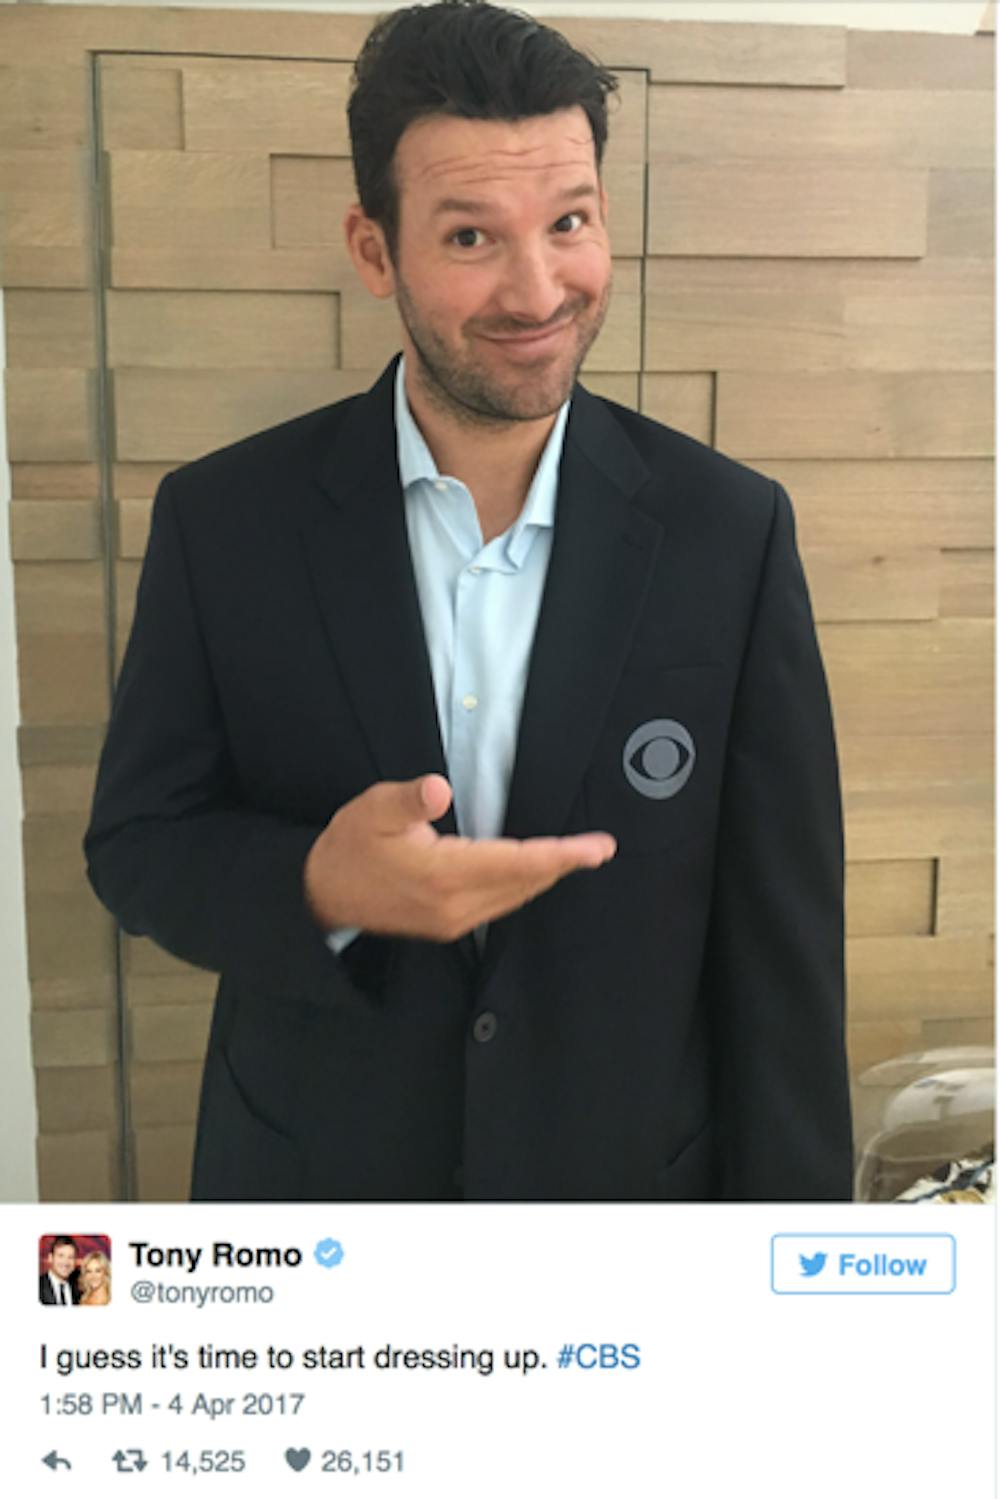 Tony Romo in a CBS jacket. Photo via www.twitter.com/tonyromo​